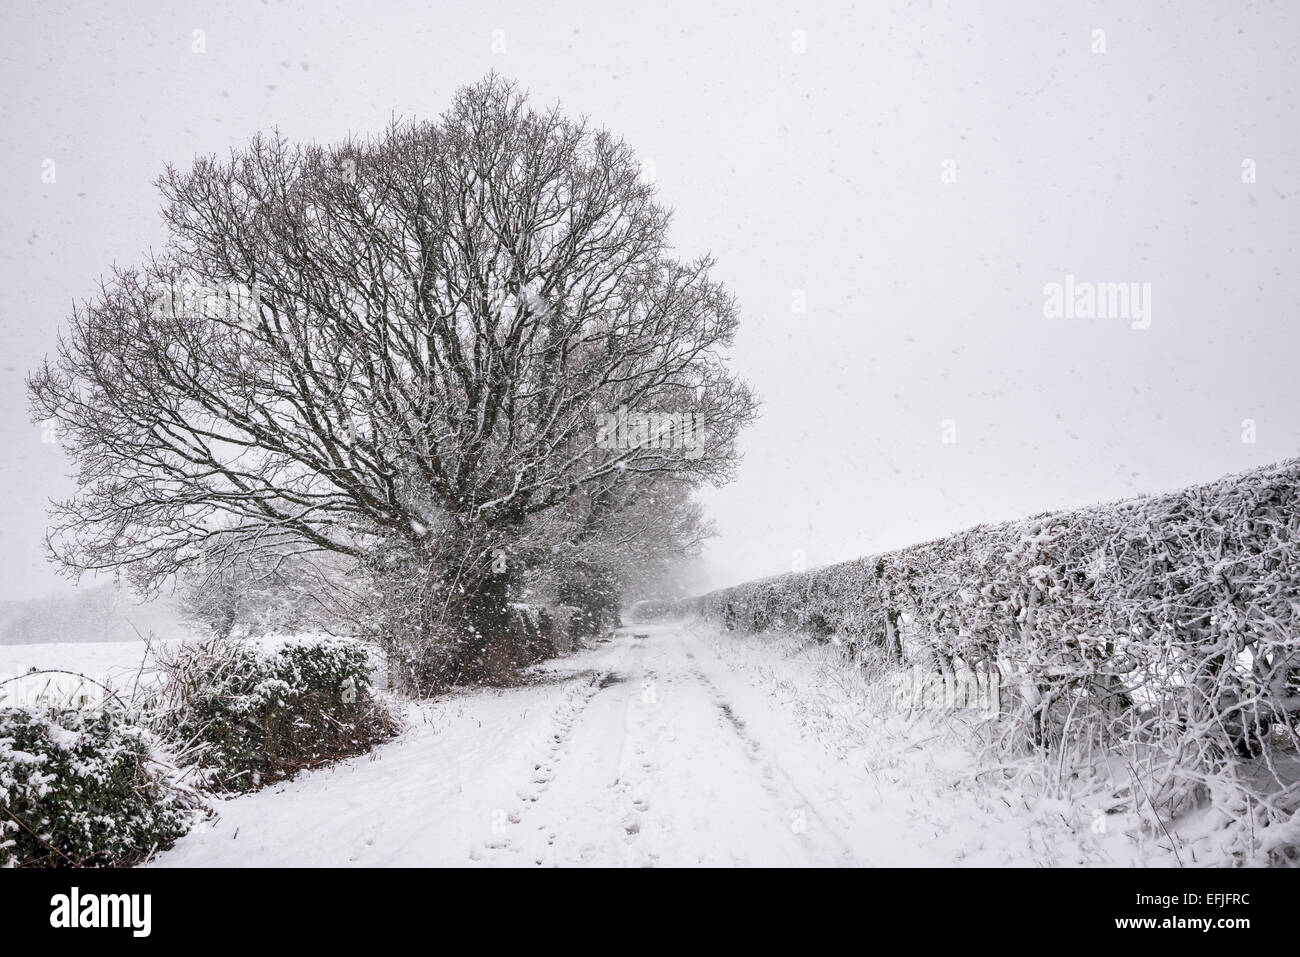 An English country lane sur un matin d'hiver enneigé. La neige a couvert les haies et les grands chênes,. Banque D'Images